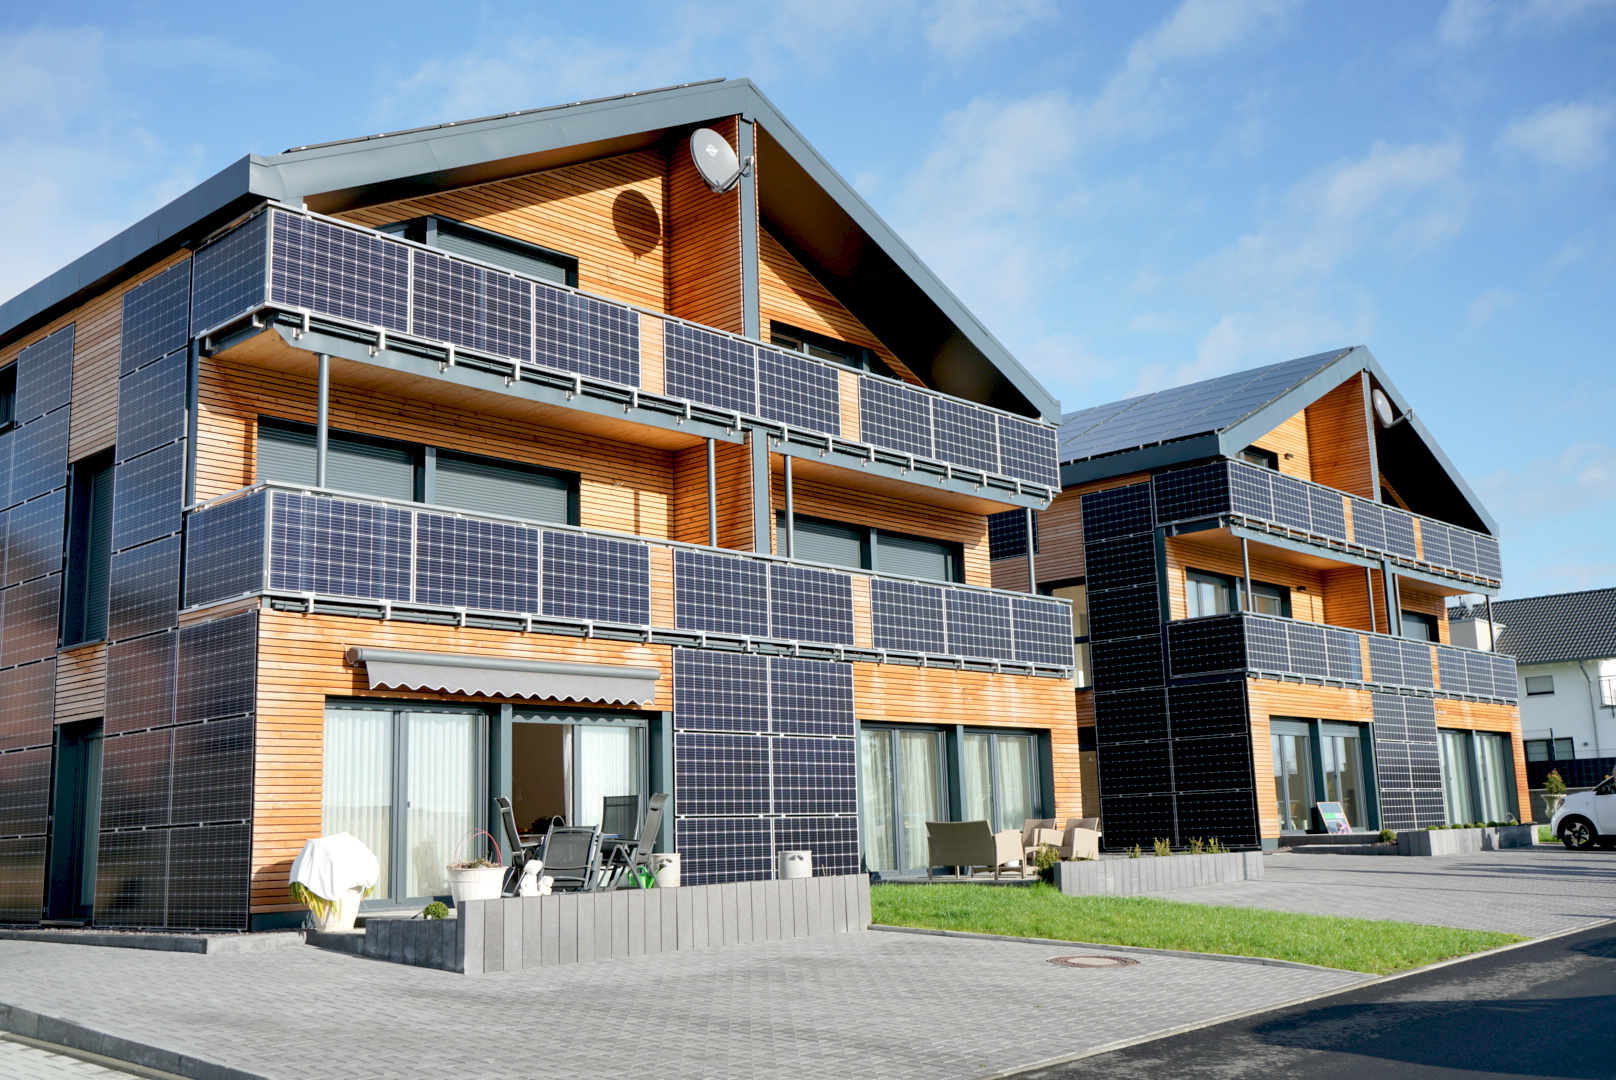 Alle Fassaden der Häuser sind mit Photovoltaikmodulen belegt. Foto: Lahn-Dill-Kreis